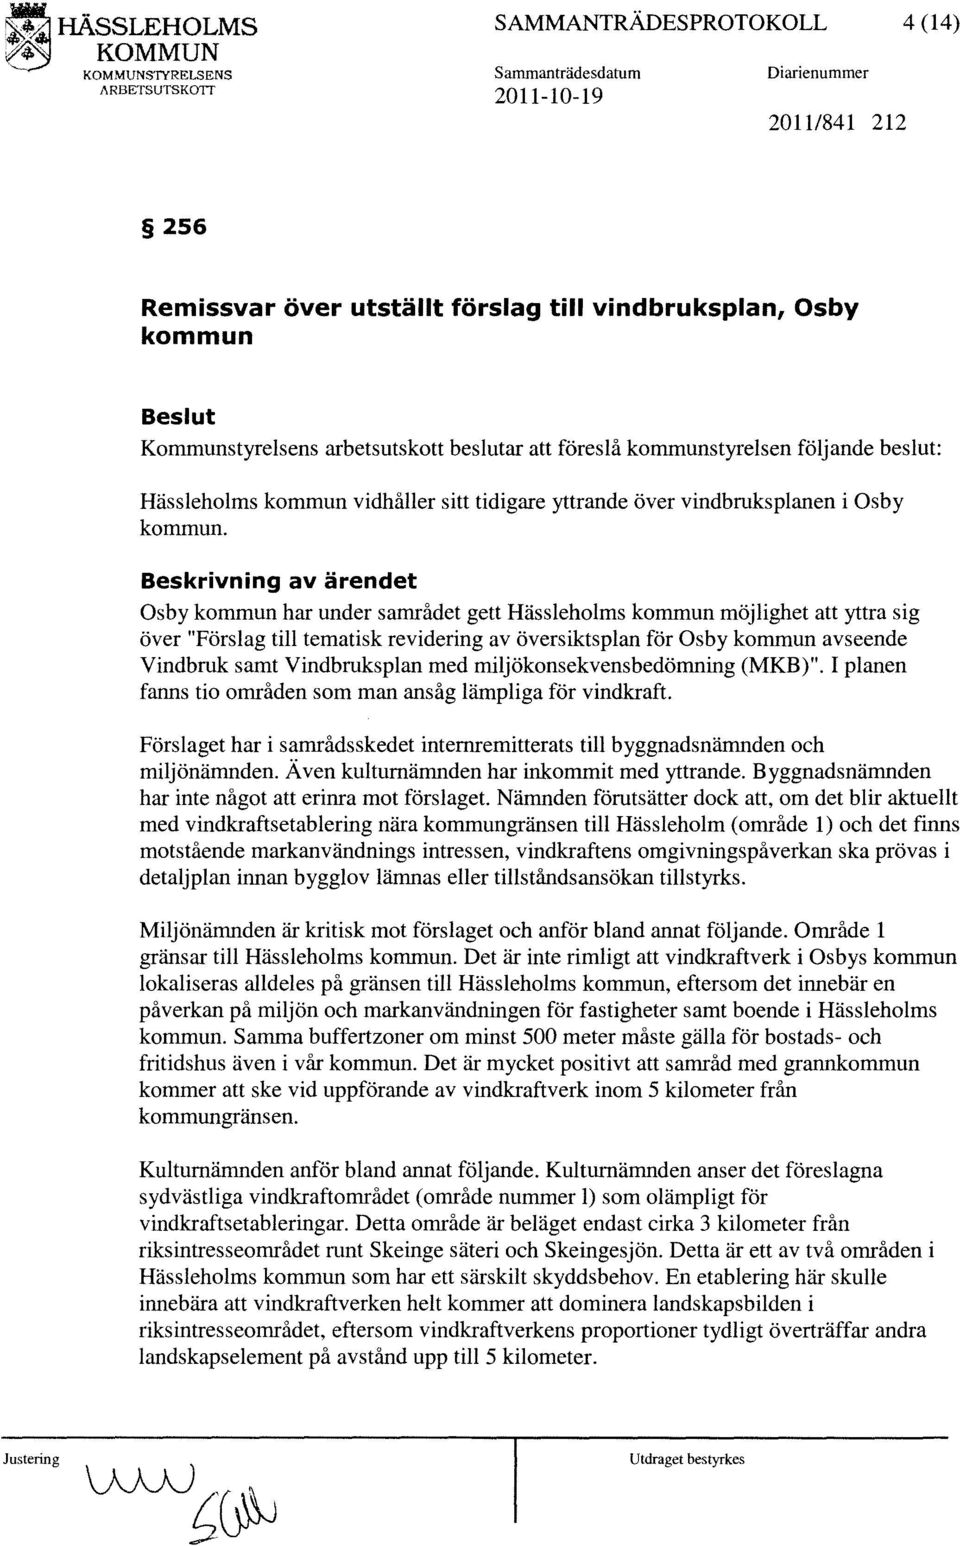 beslut: Hässleholms kommun vidhåller sitt tidigare yttrande över vindbruksplanen i Osby kommun.